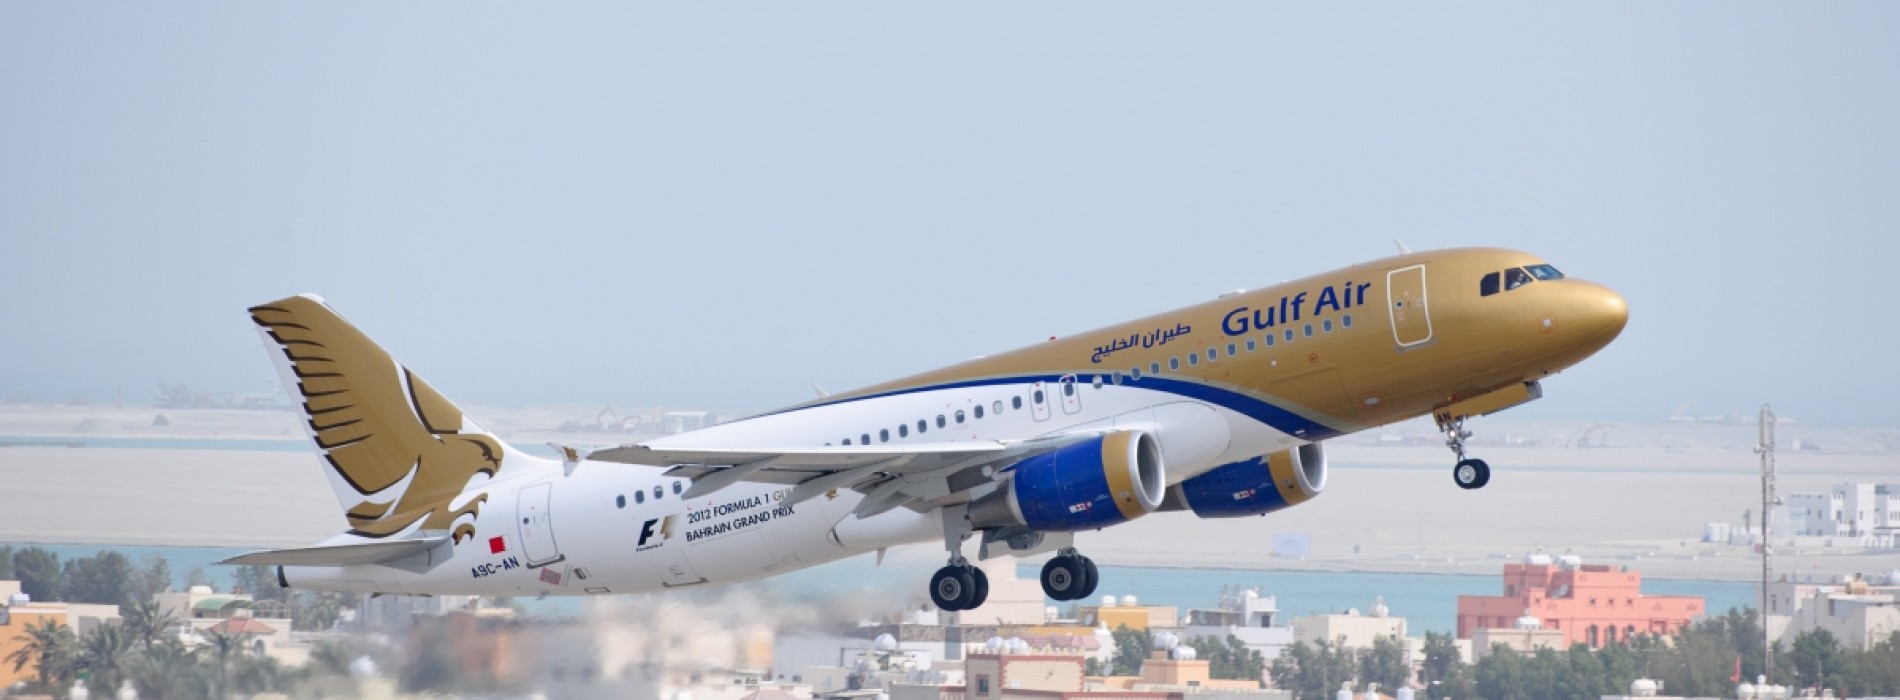 Gulf Air launches Bahrain Tourist Visa service